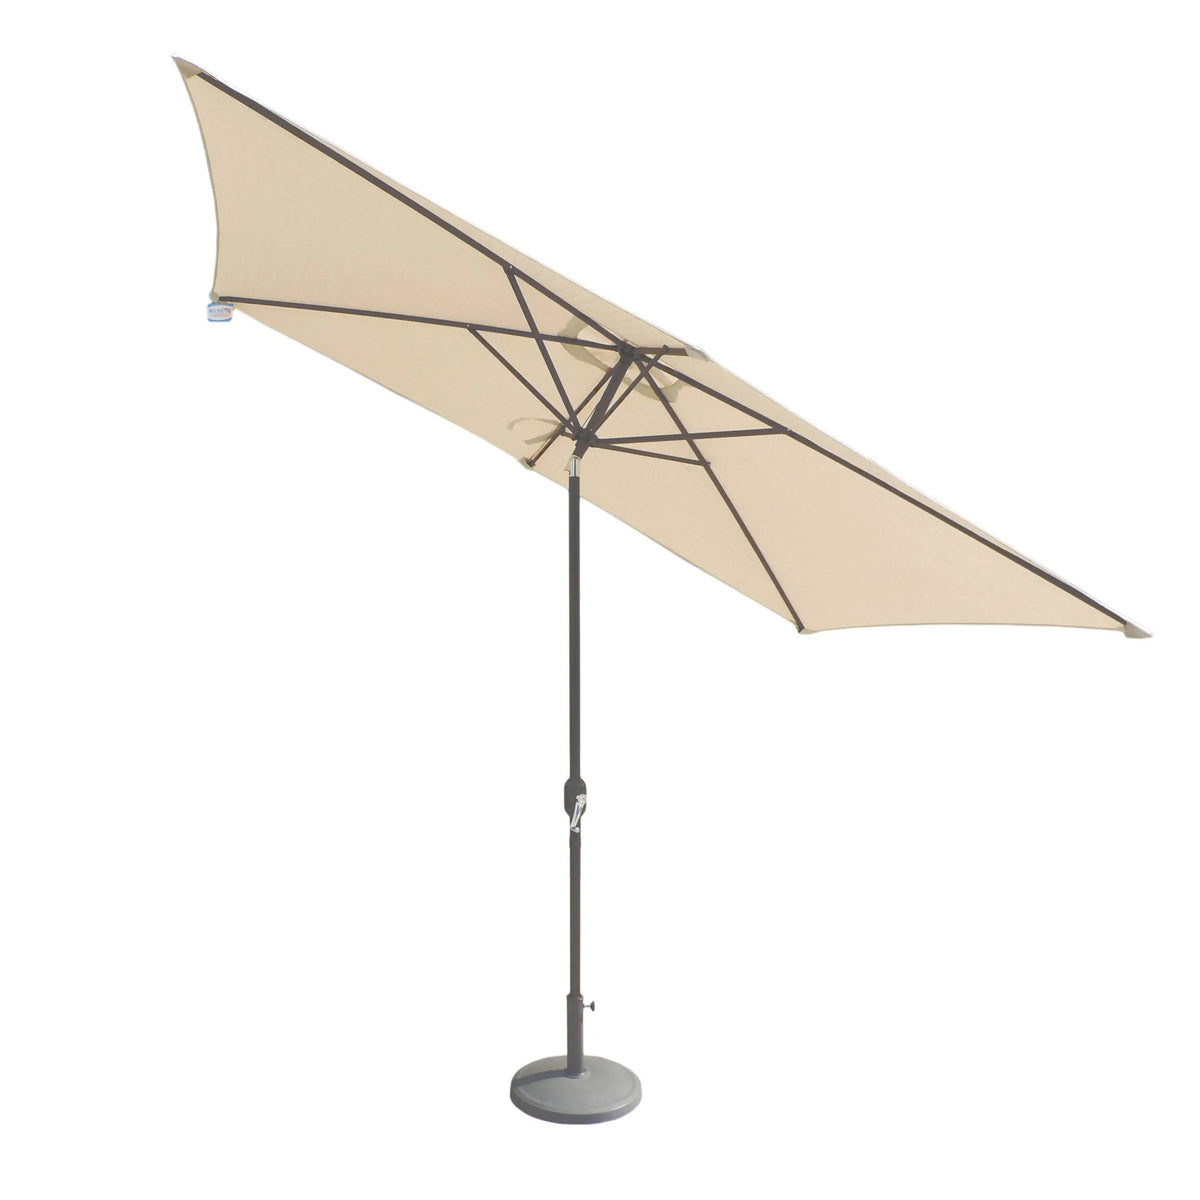 Ivory Cream Rectangular Parasol Umbrella with Grey aluminium Frame